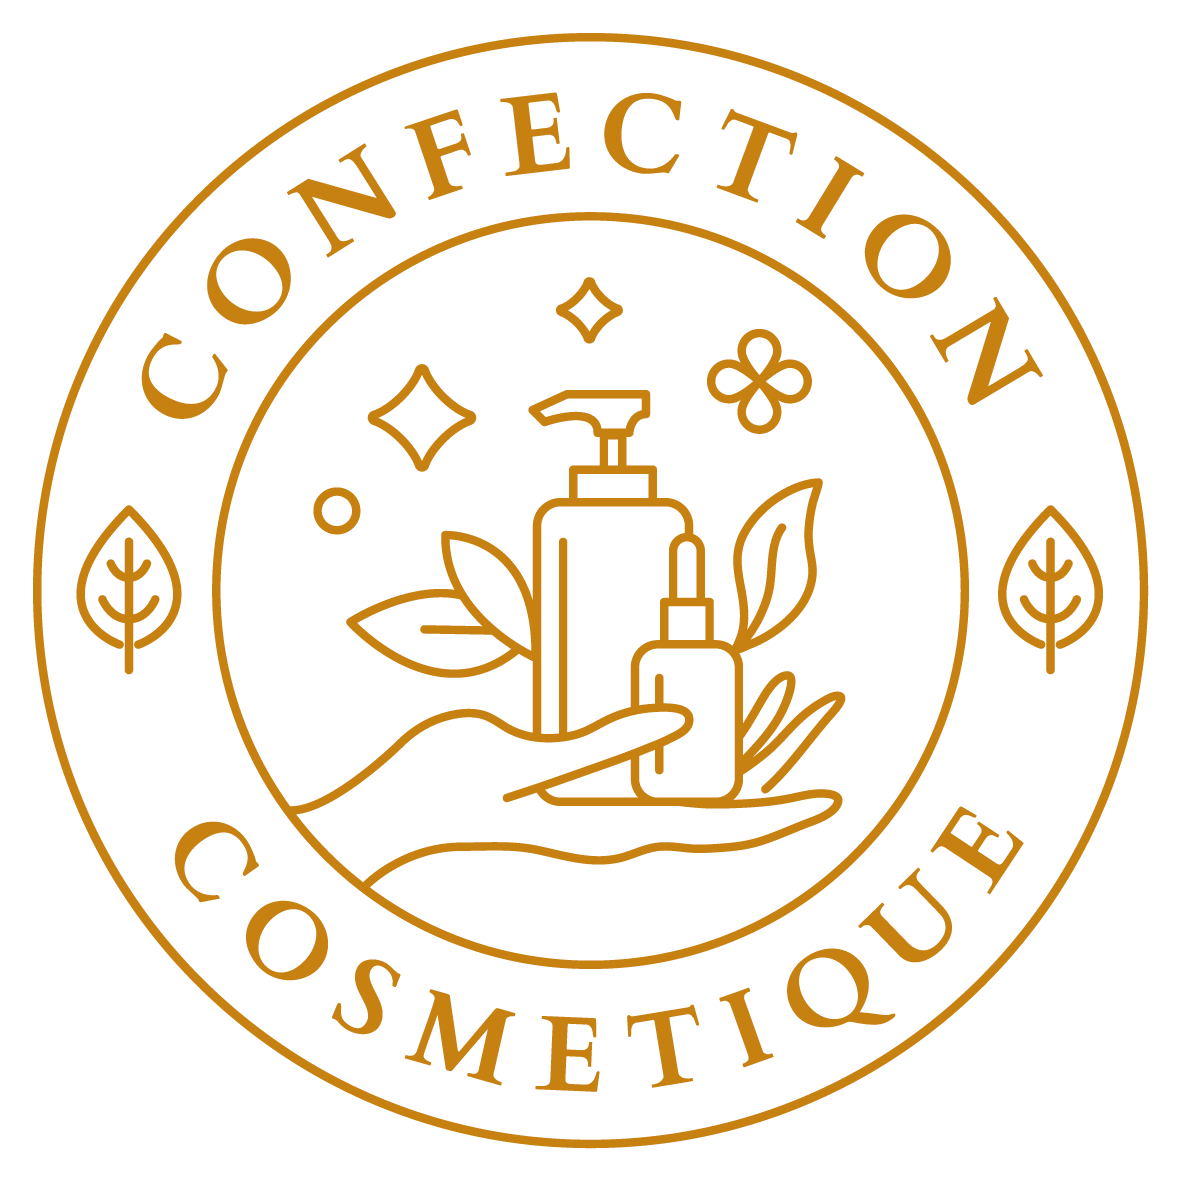 Confection-cosmetique